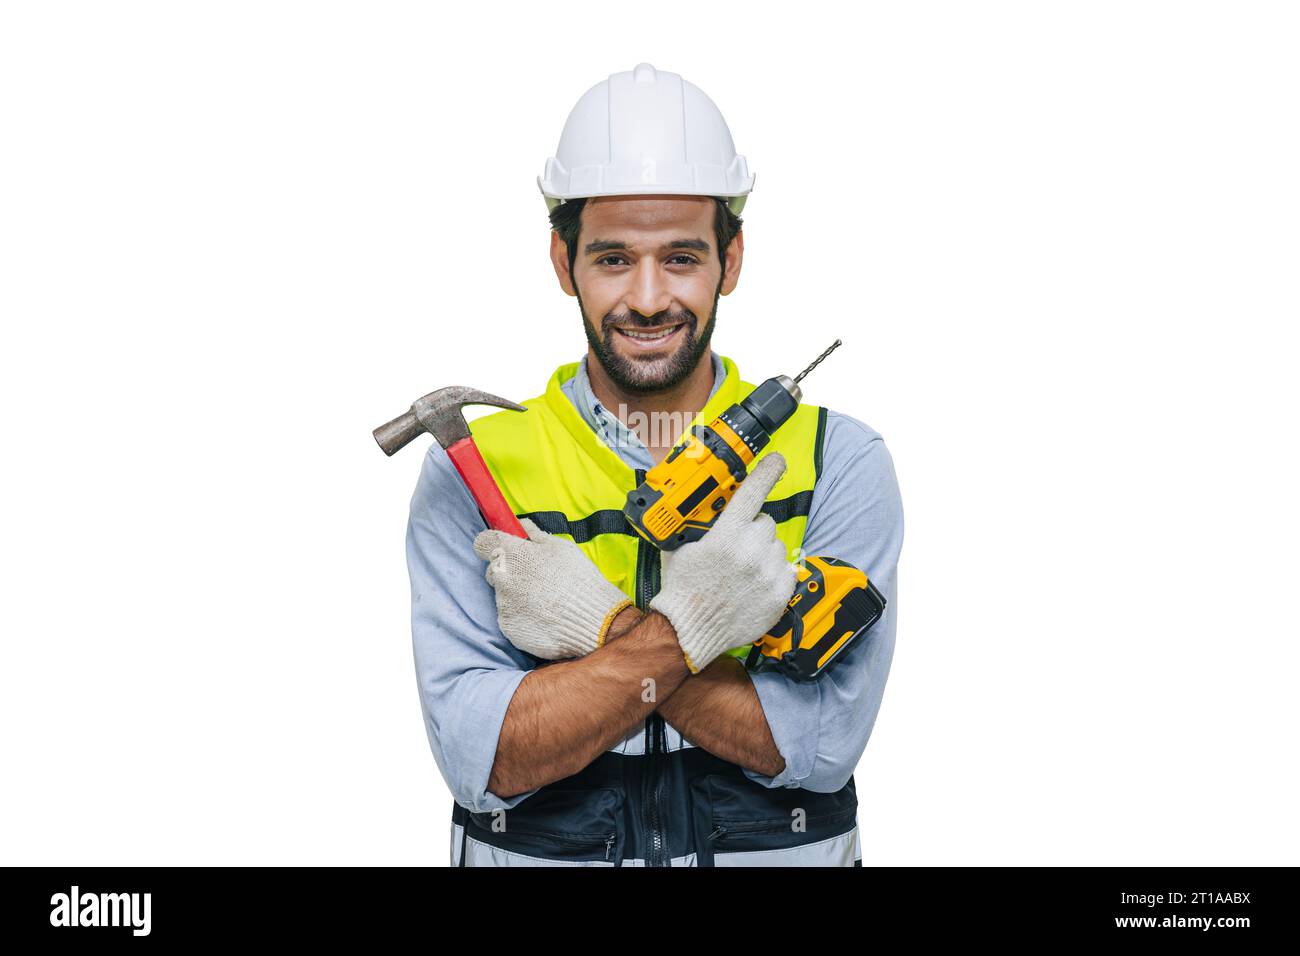 happy mâle travailleur house handy man fixer service de réparation avec des équipements d'outils de constructeur isolés sur fond blanc avec chemin de découpage. Banque D'Images